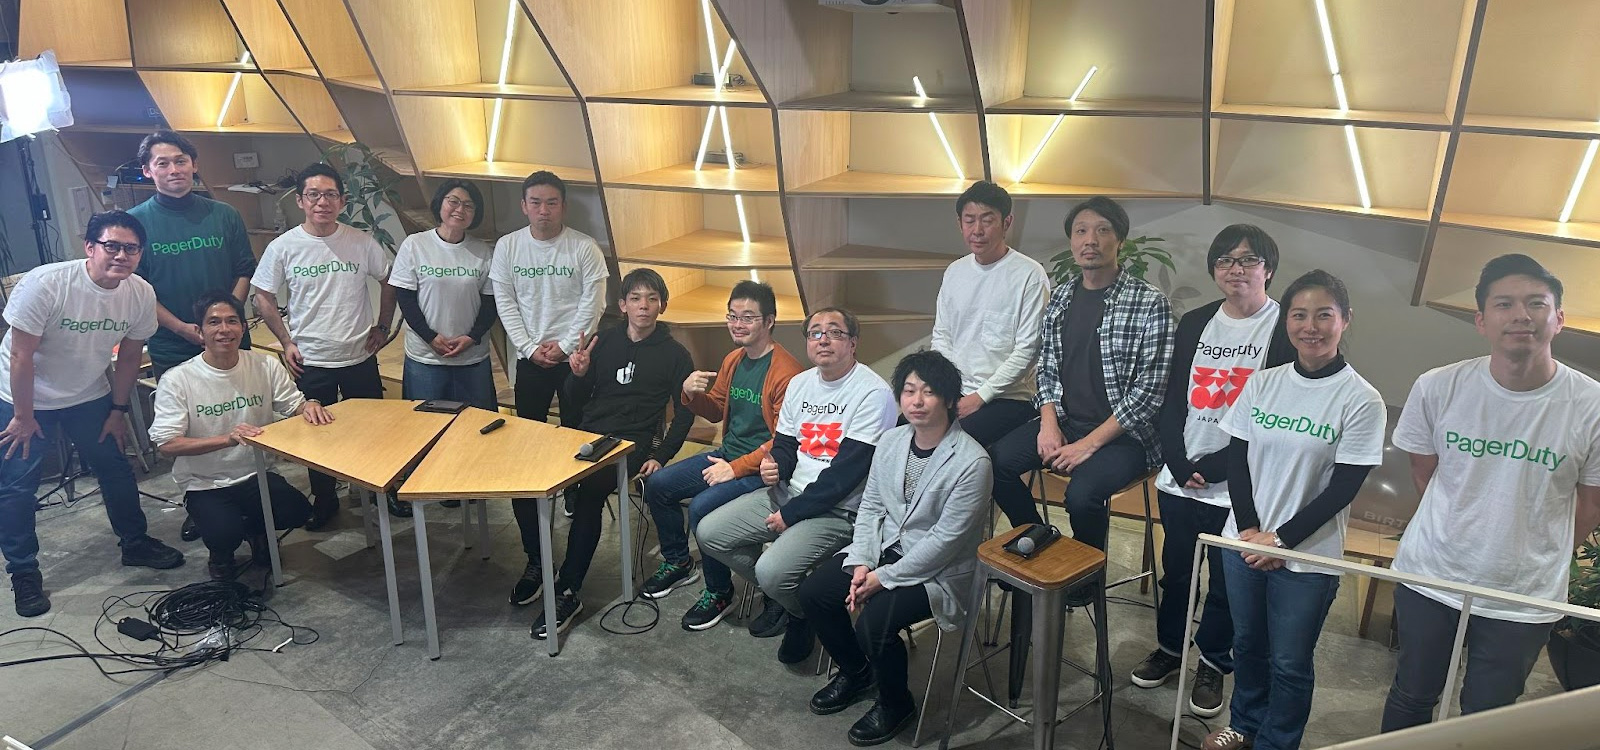 第1回 PagerDuty Japan Community Meetup開催！ユーザー6社のLightning Talk をレポート